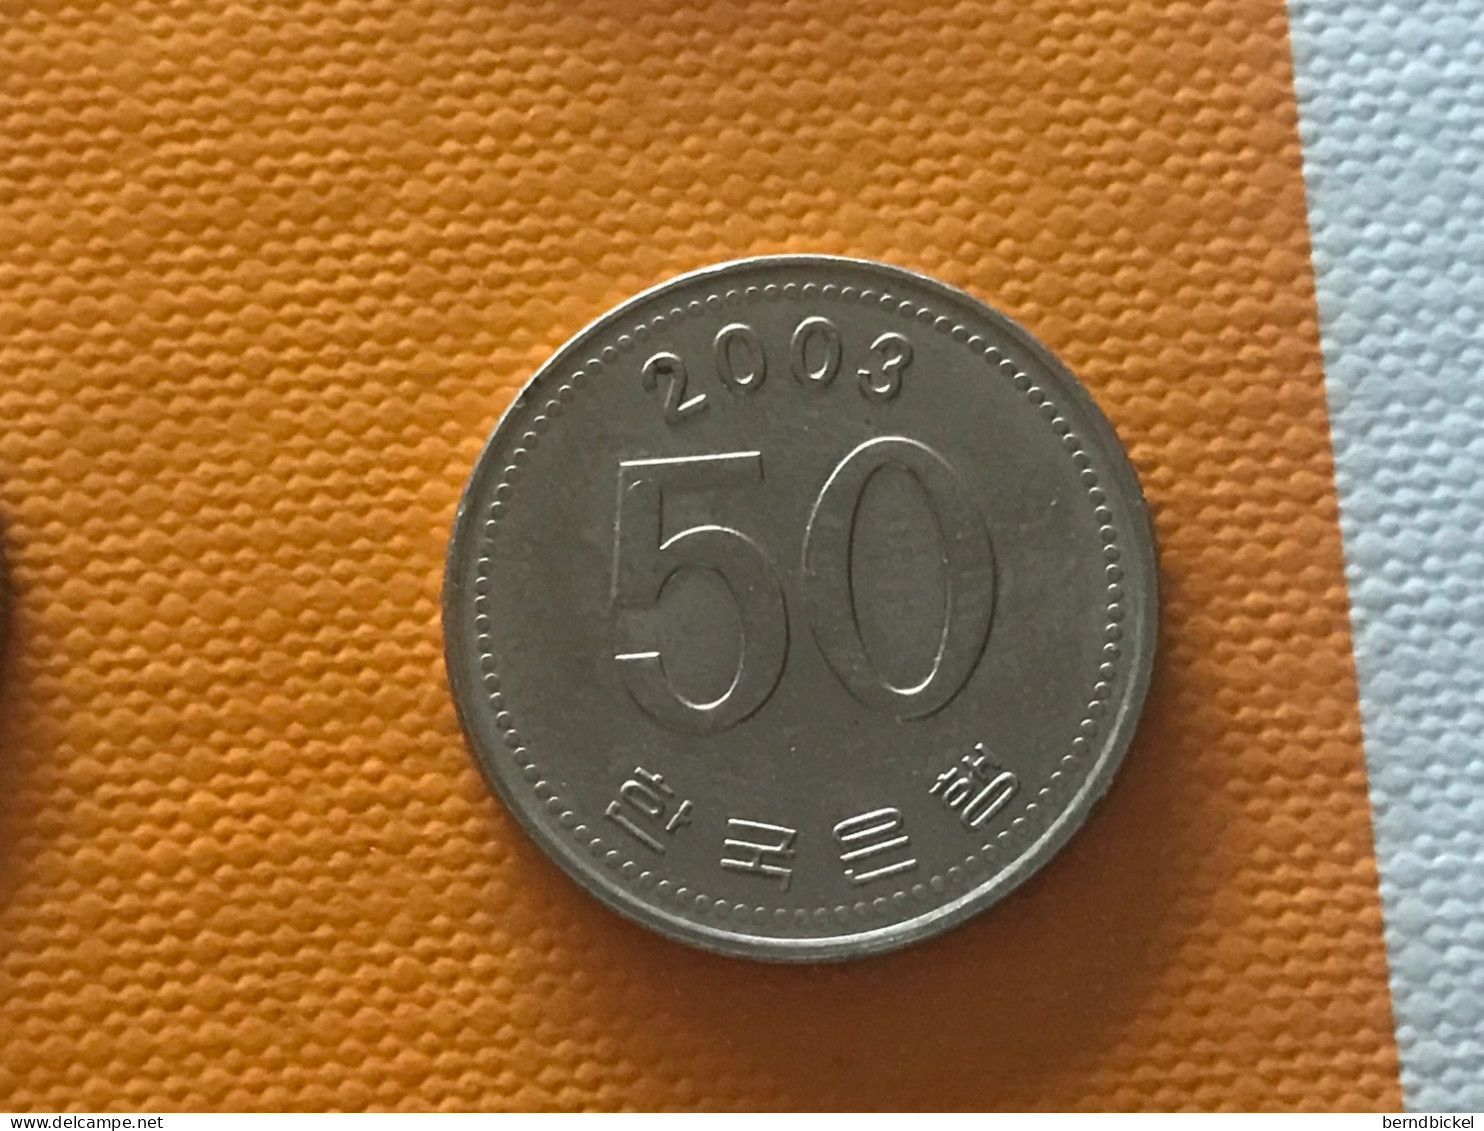 Münze Münzen Umlaufmünze Südkorea 50 Won 2003 - Korea, South